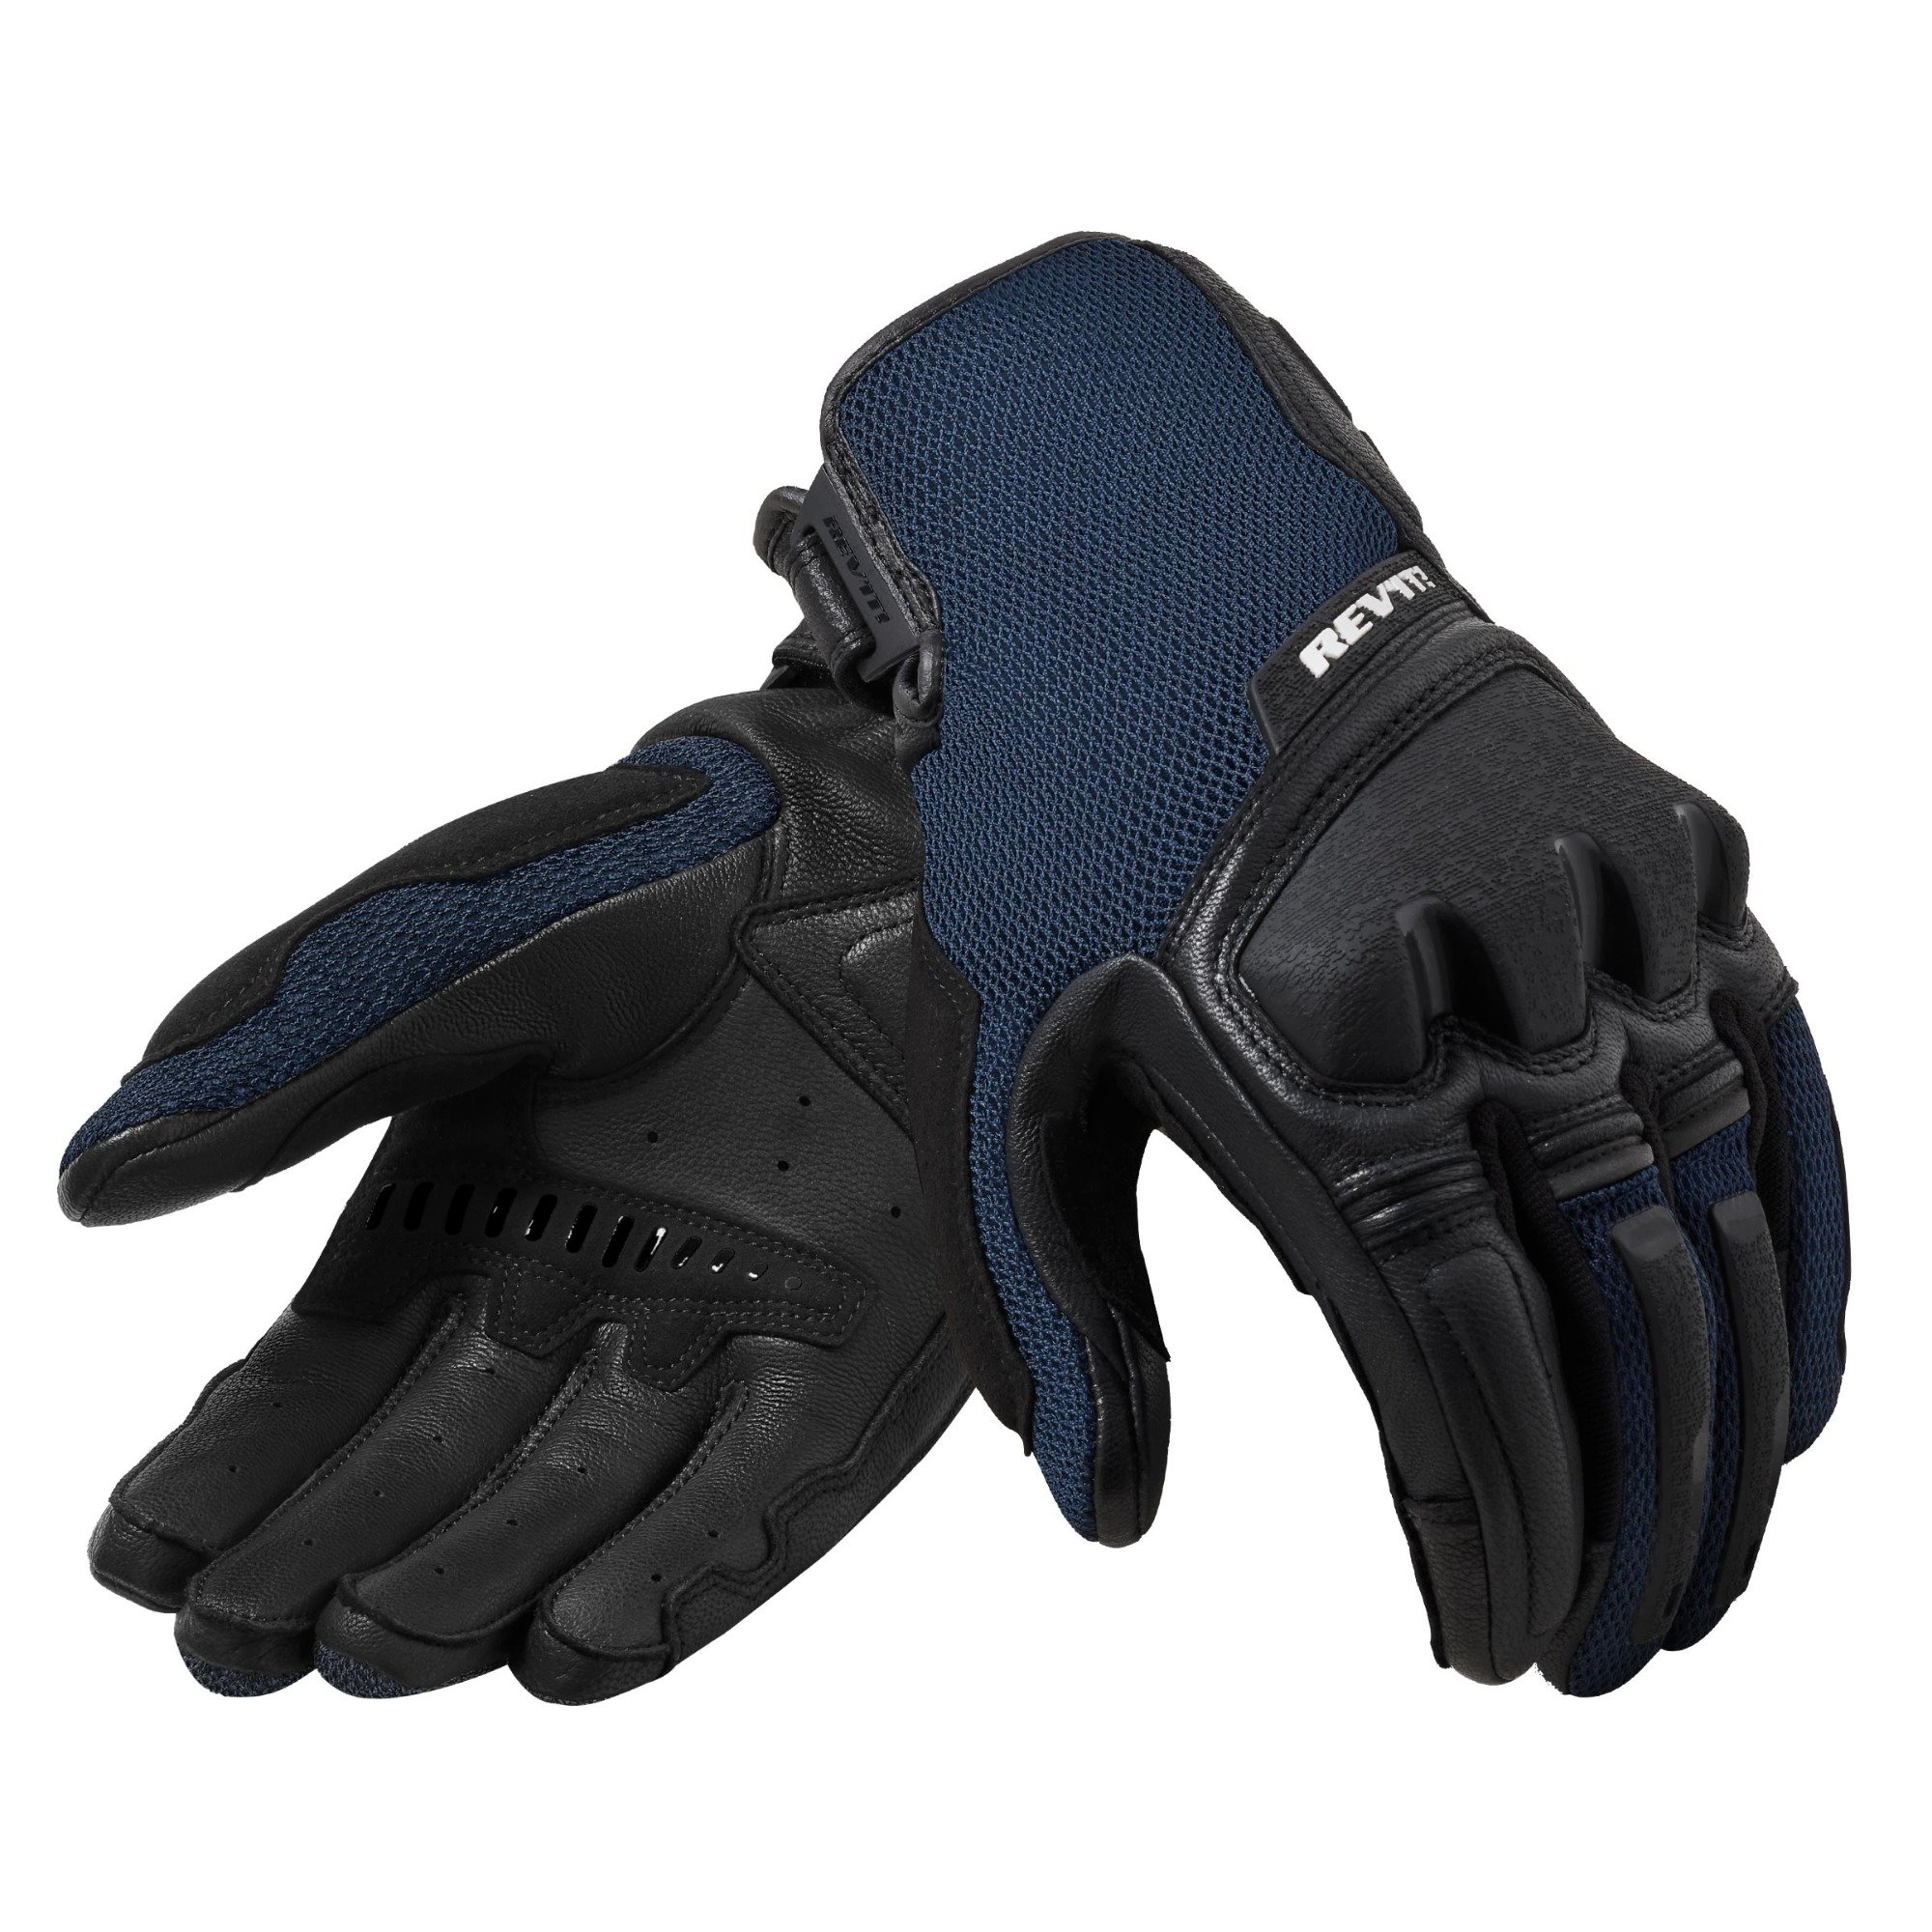 Image of REV'IT! Duty Schwarz Blau Handschuhe Größe S